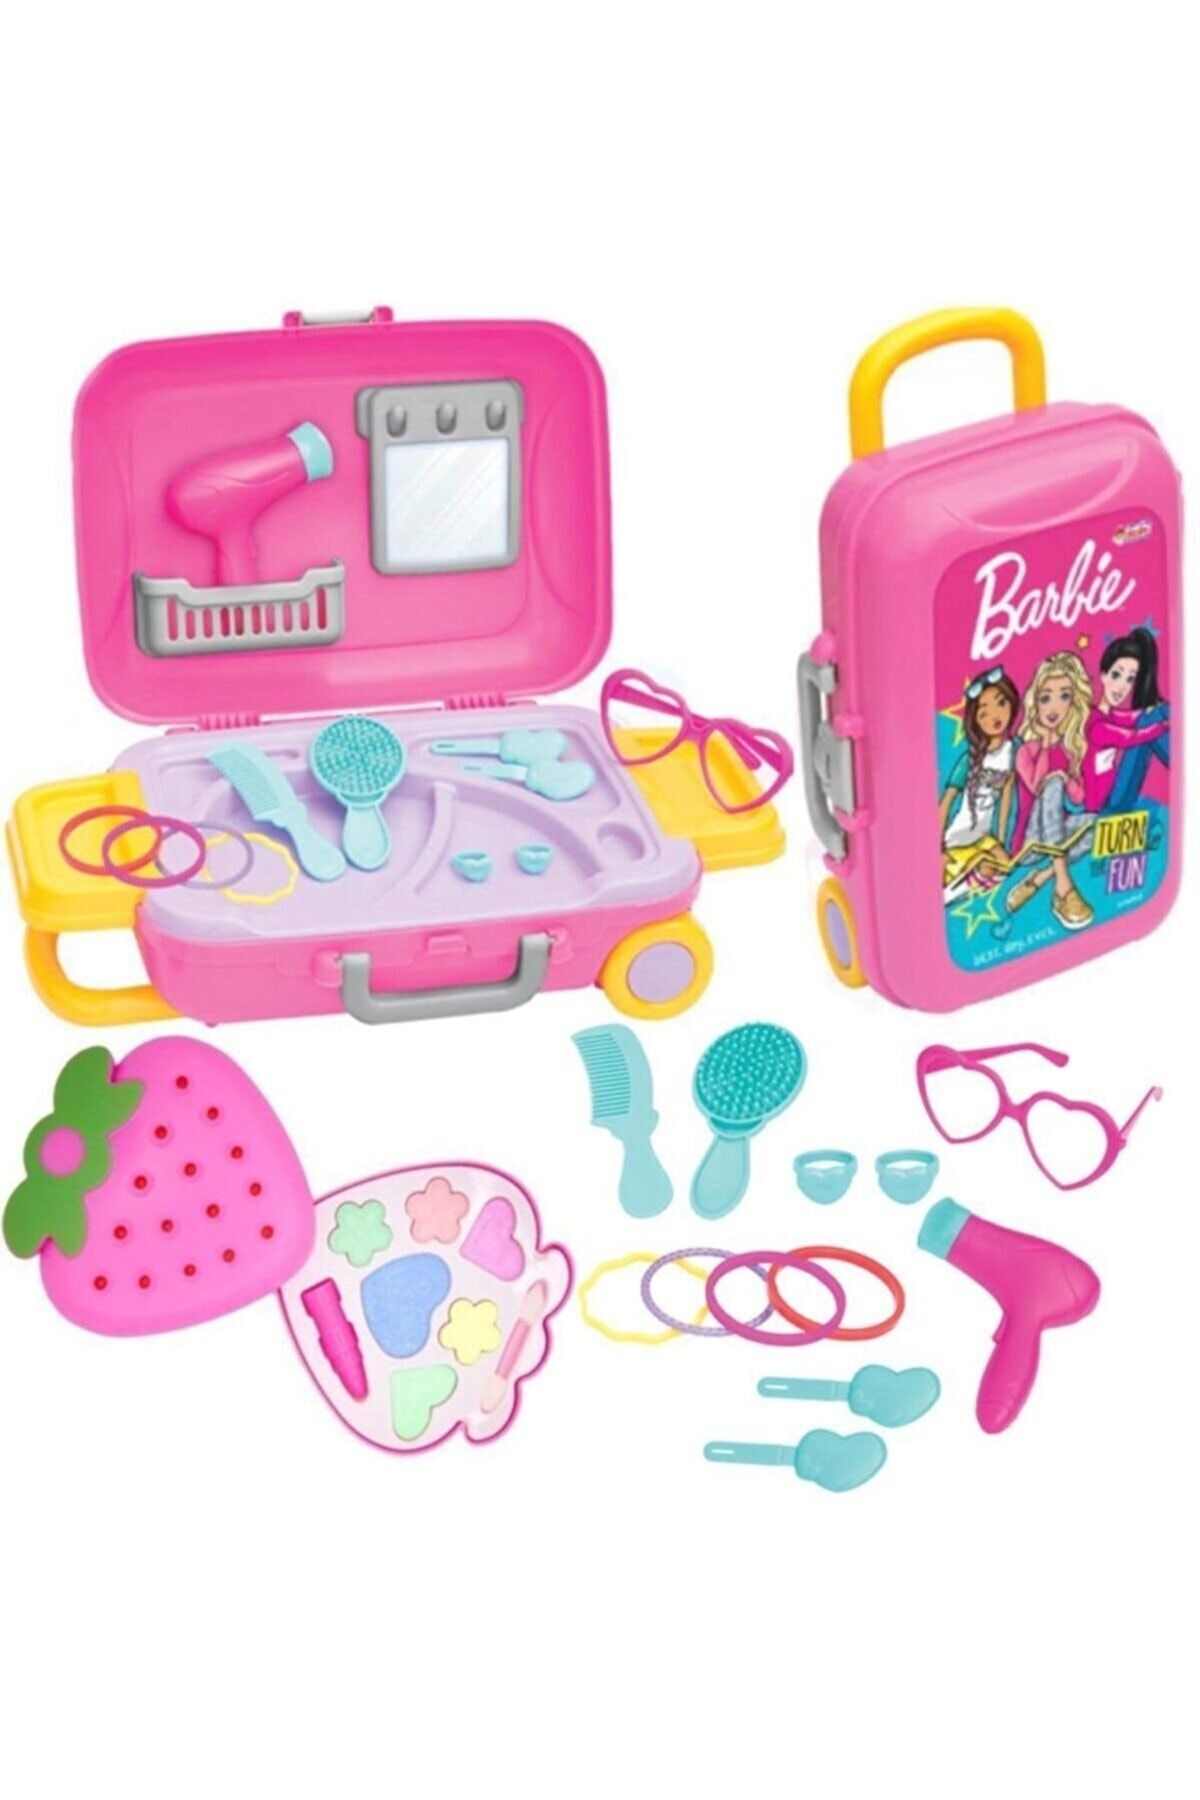 SAZE Oyuncak Barbie Güzellik Set Bavulum + Sürülebilir Kız Çocuk Çilek Makyaj Seti Depomiks